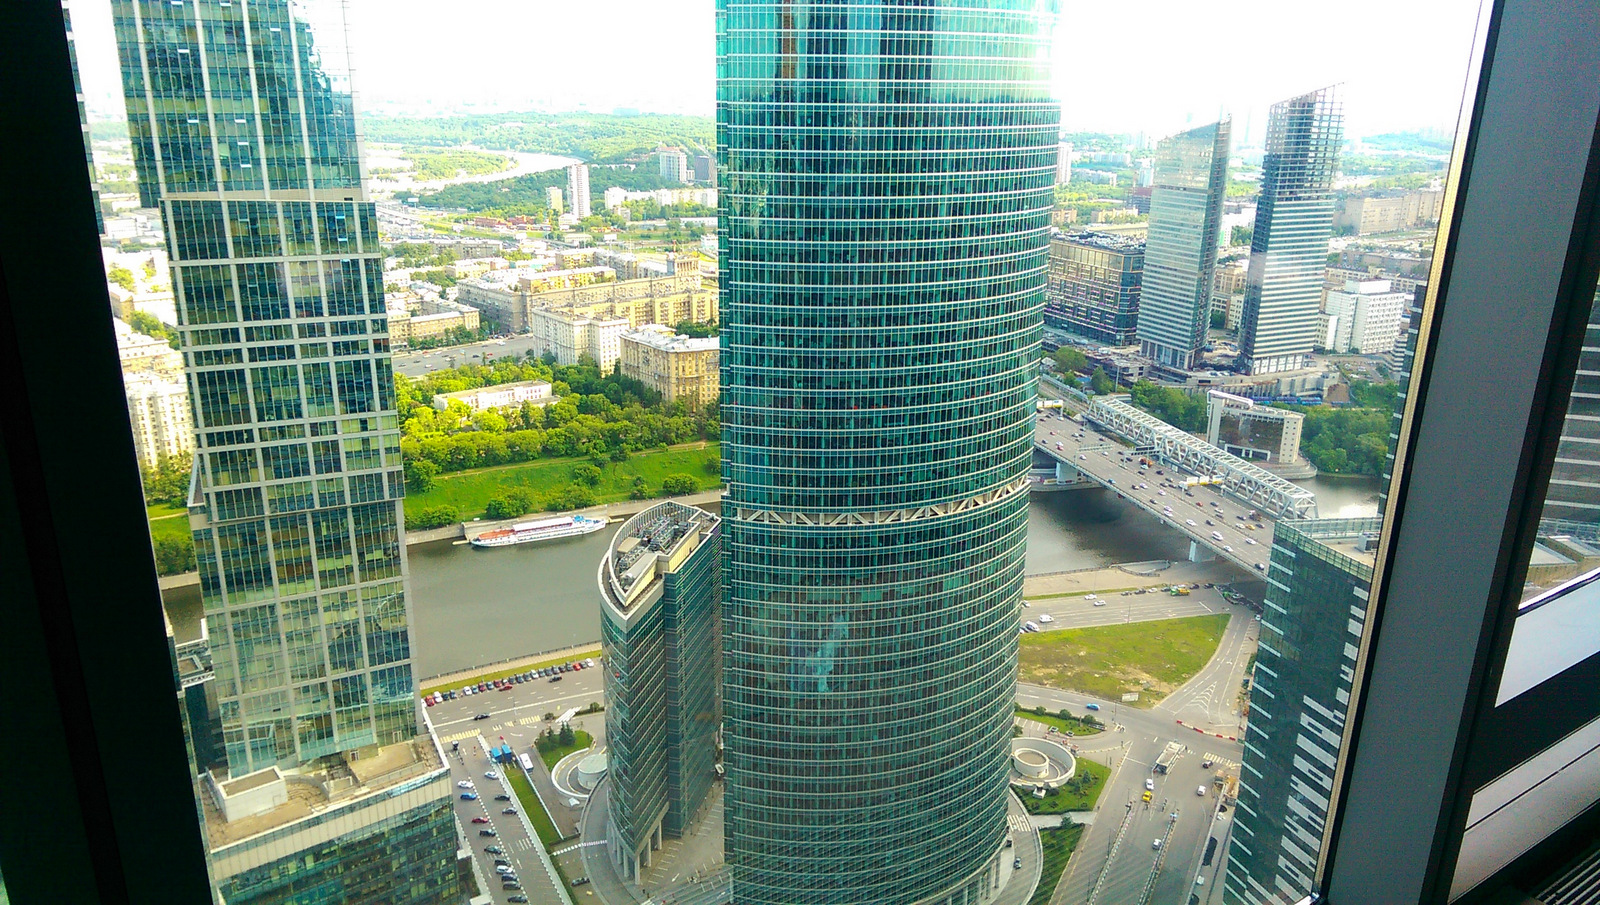 Дом 55 этажей. Москва Сити 100 этаж. Башня Федерация 49 этаж гостиница. Вид с 100 этажа Москва Сити. Москва-Сити 71 этаж.